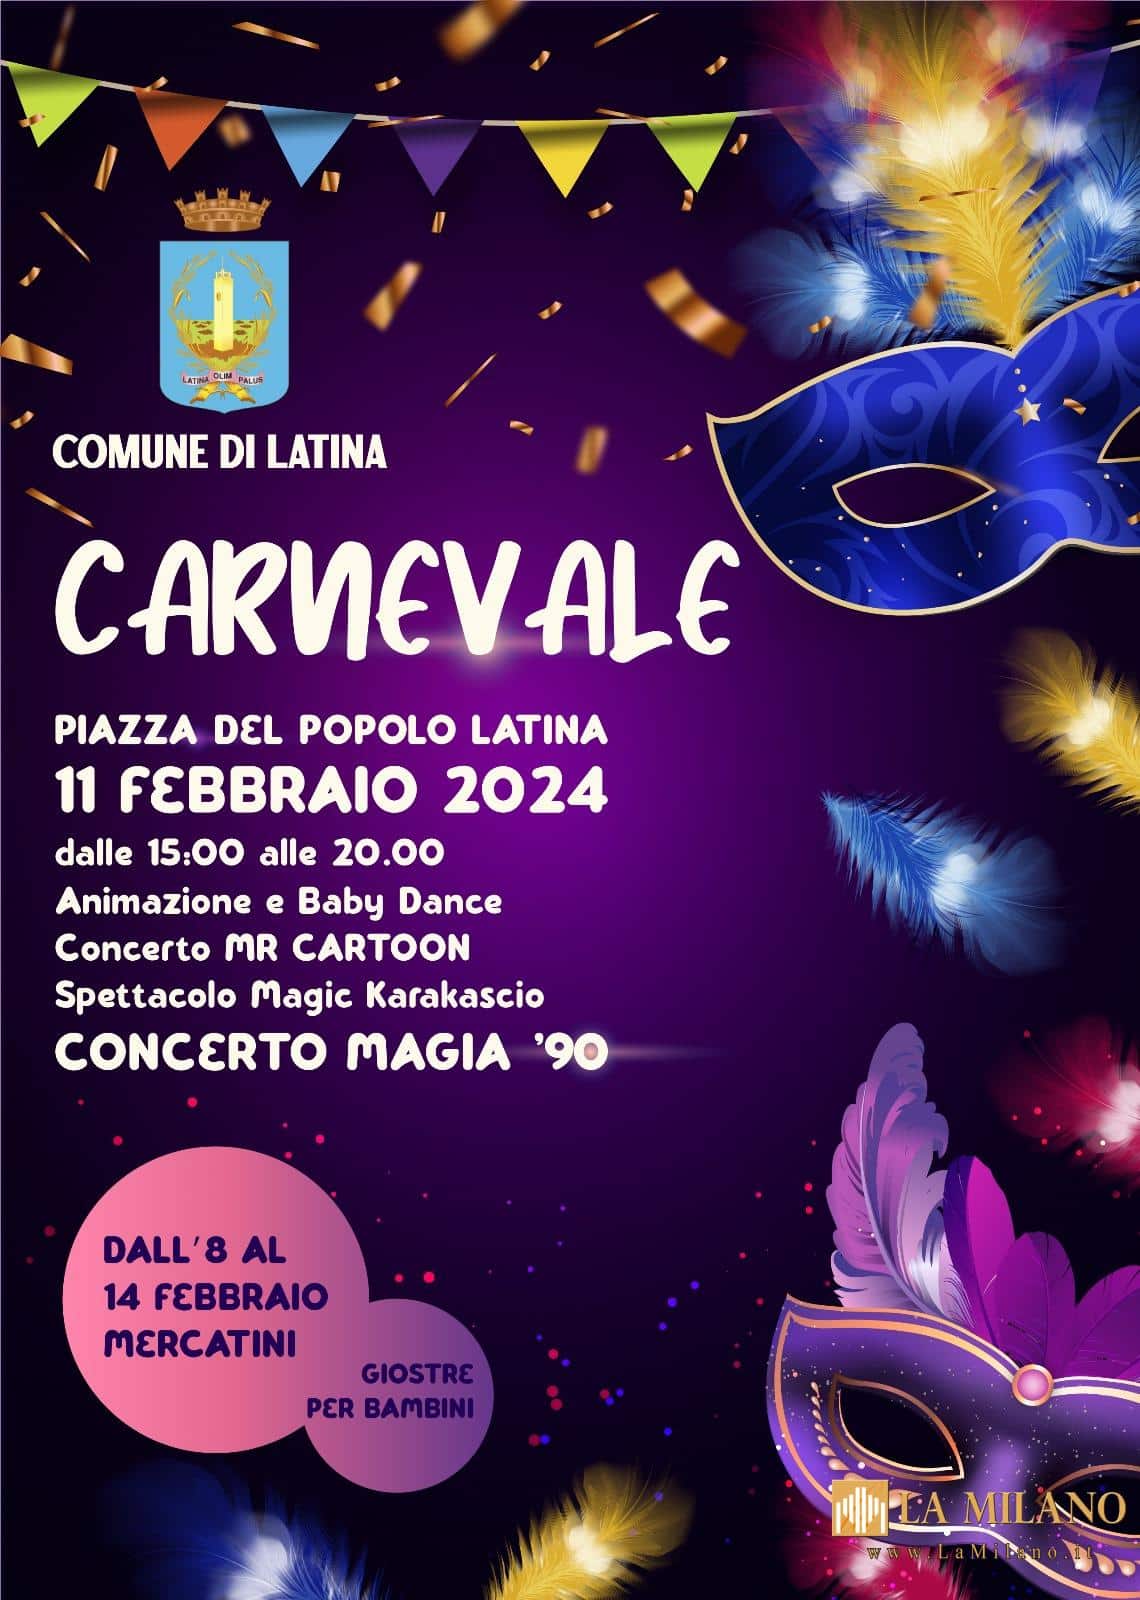 Latina, Carnevale e San Valentino: festa in piazza e mercatini